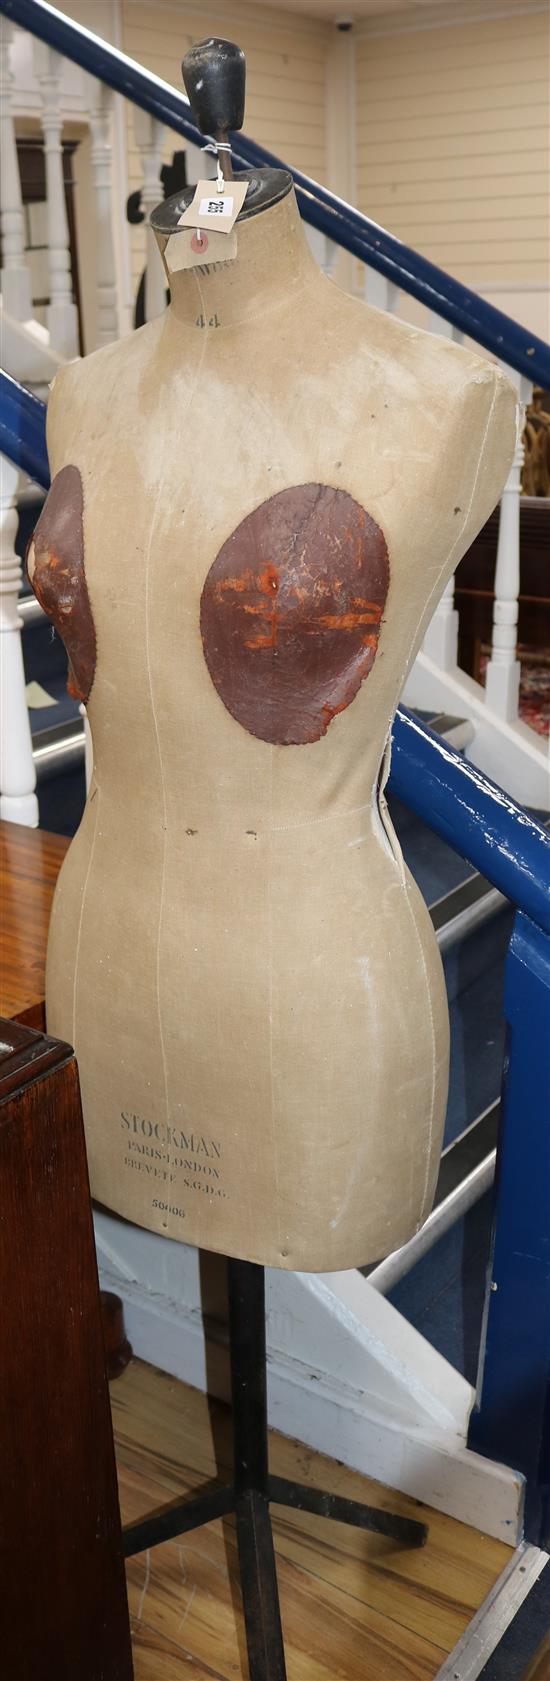 A Stockman mannequin